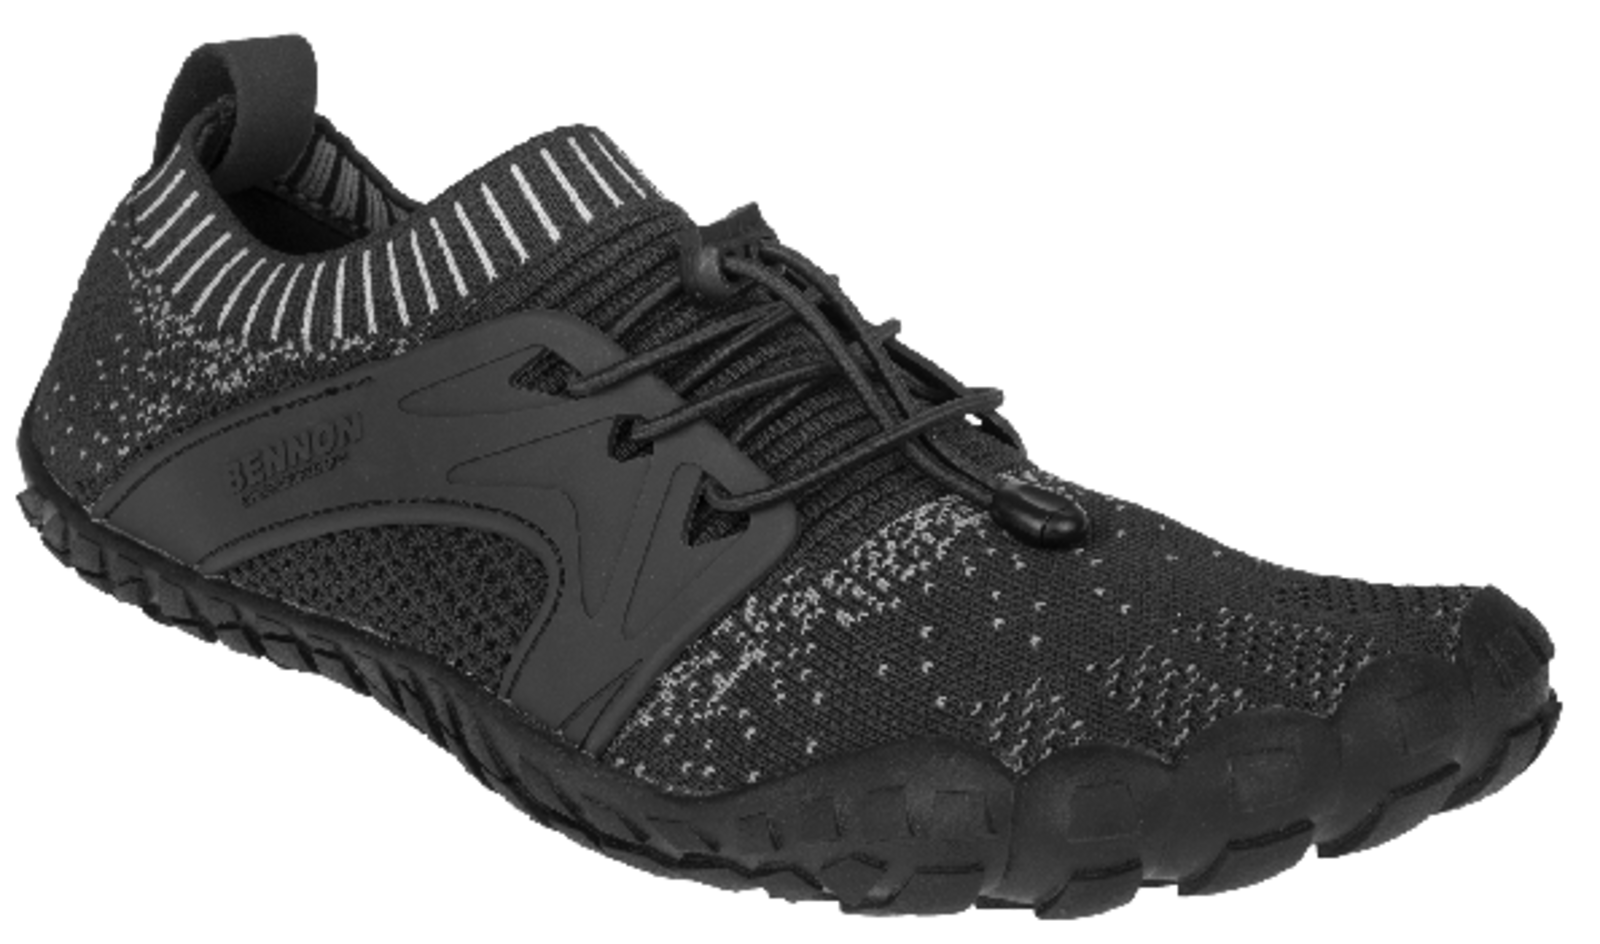 Voľnočasová barefoot obuv Bennon Bosky - veľkosť: 44, farba: čierna/biela